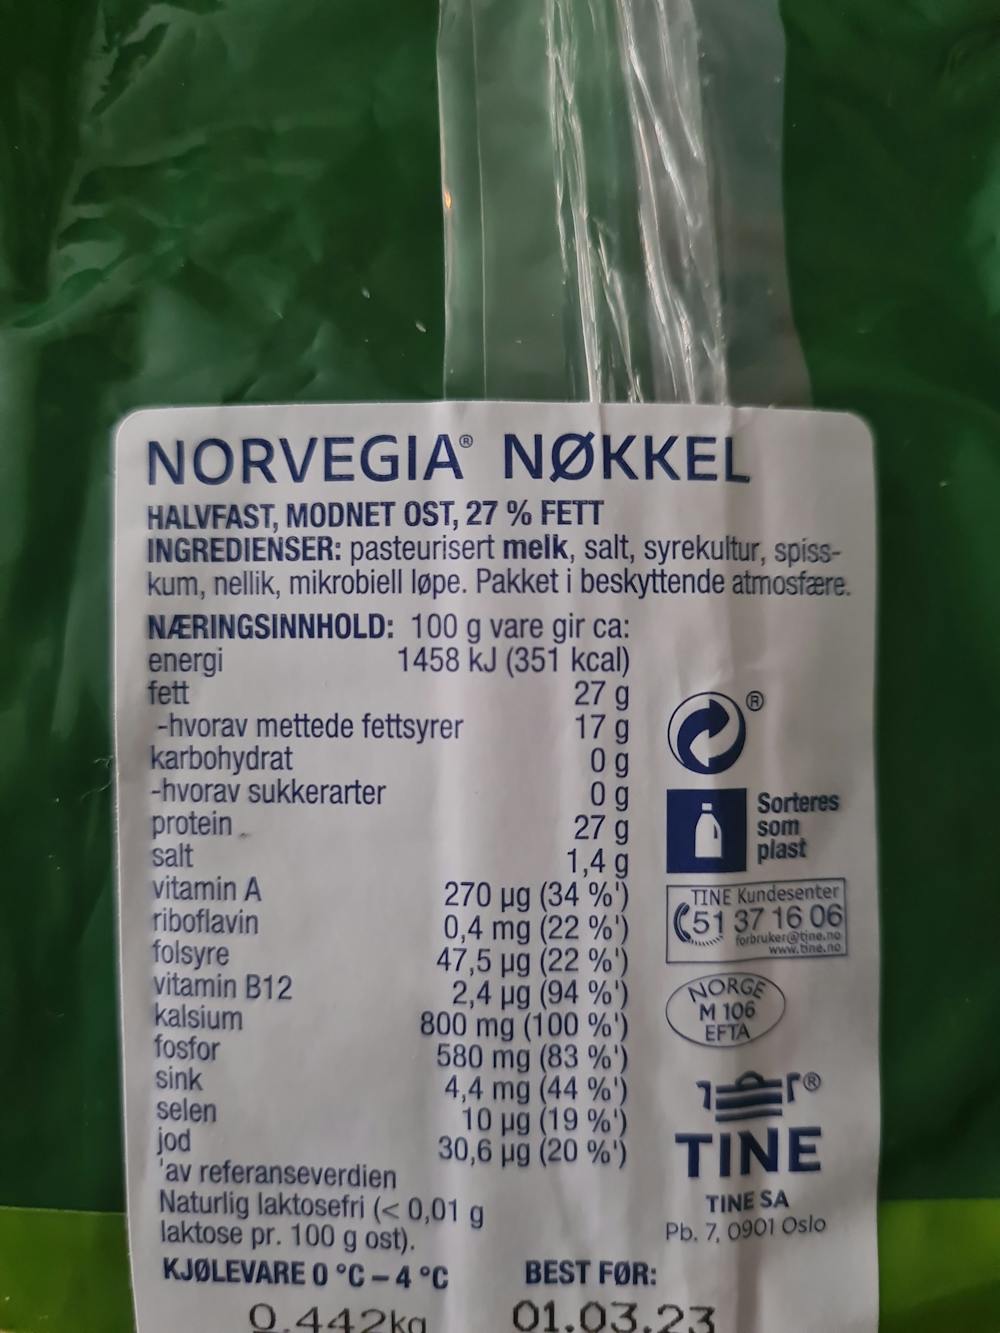 Ingrediensliste - nøkkelost, norvegia